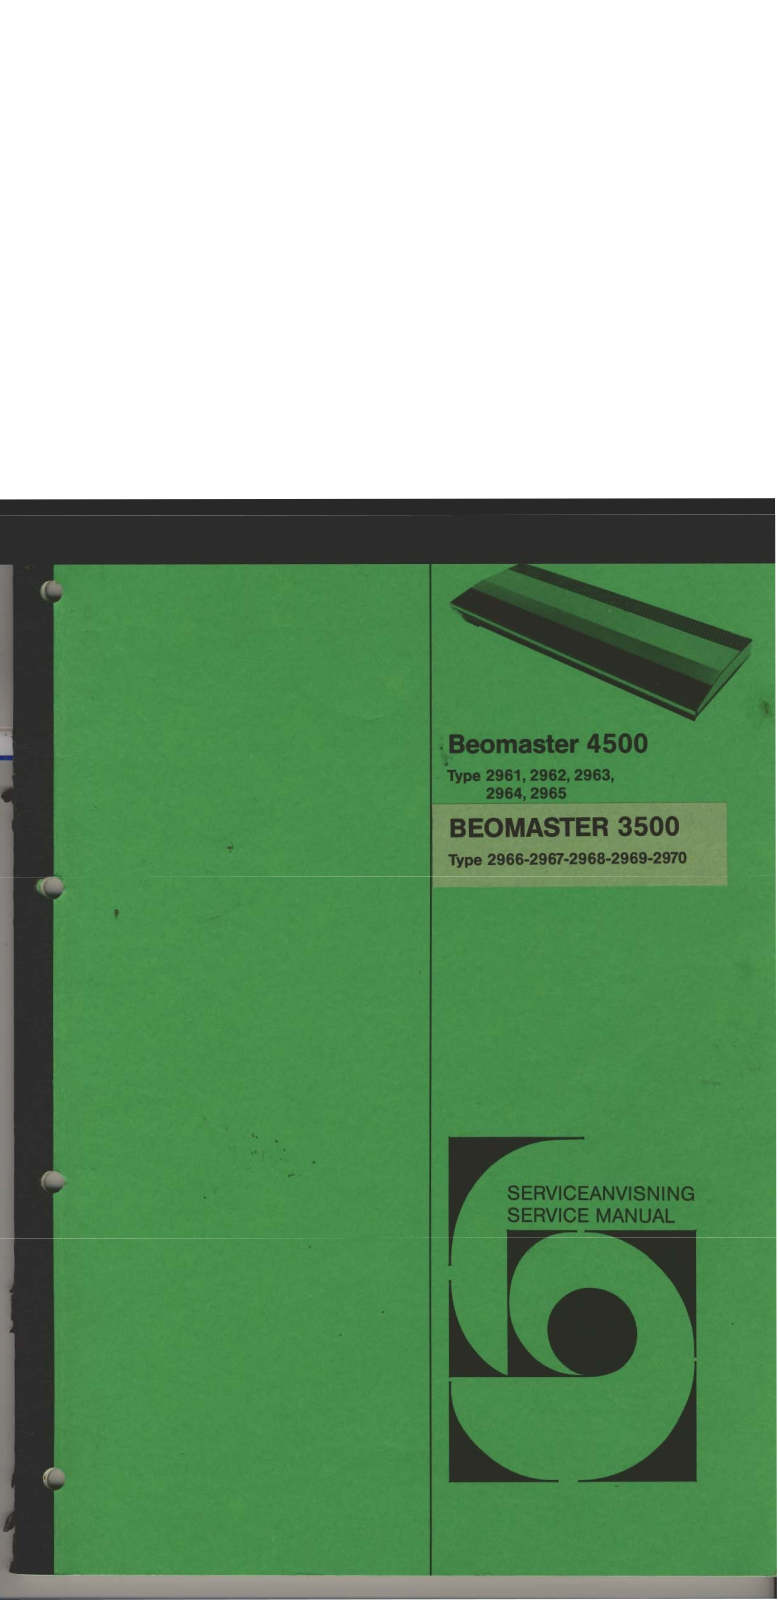 Bang Olufsen Beomaster 4500 Service Manual